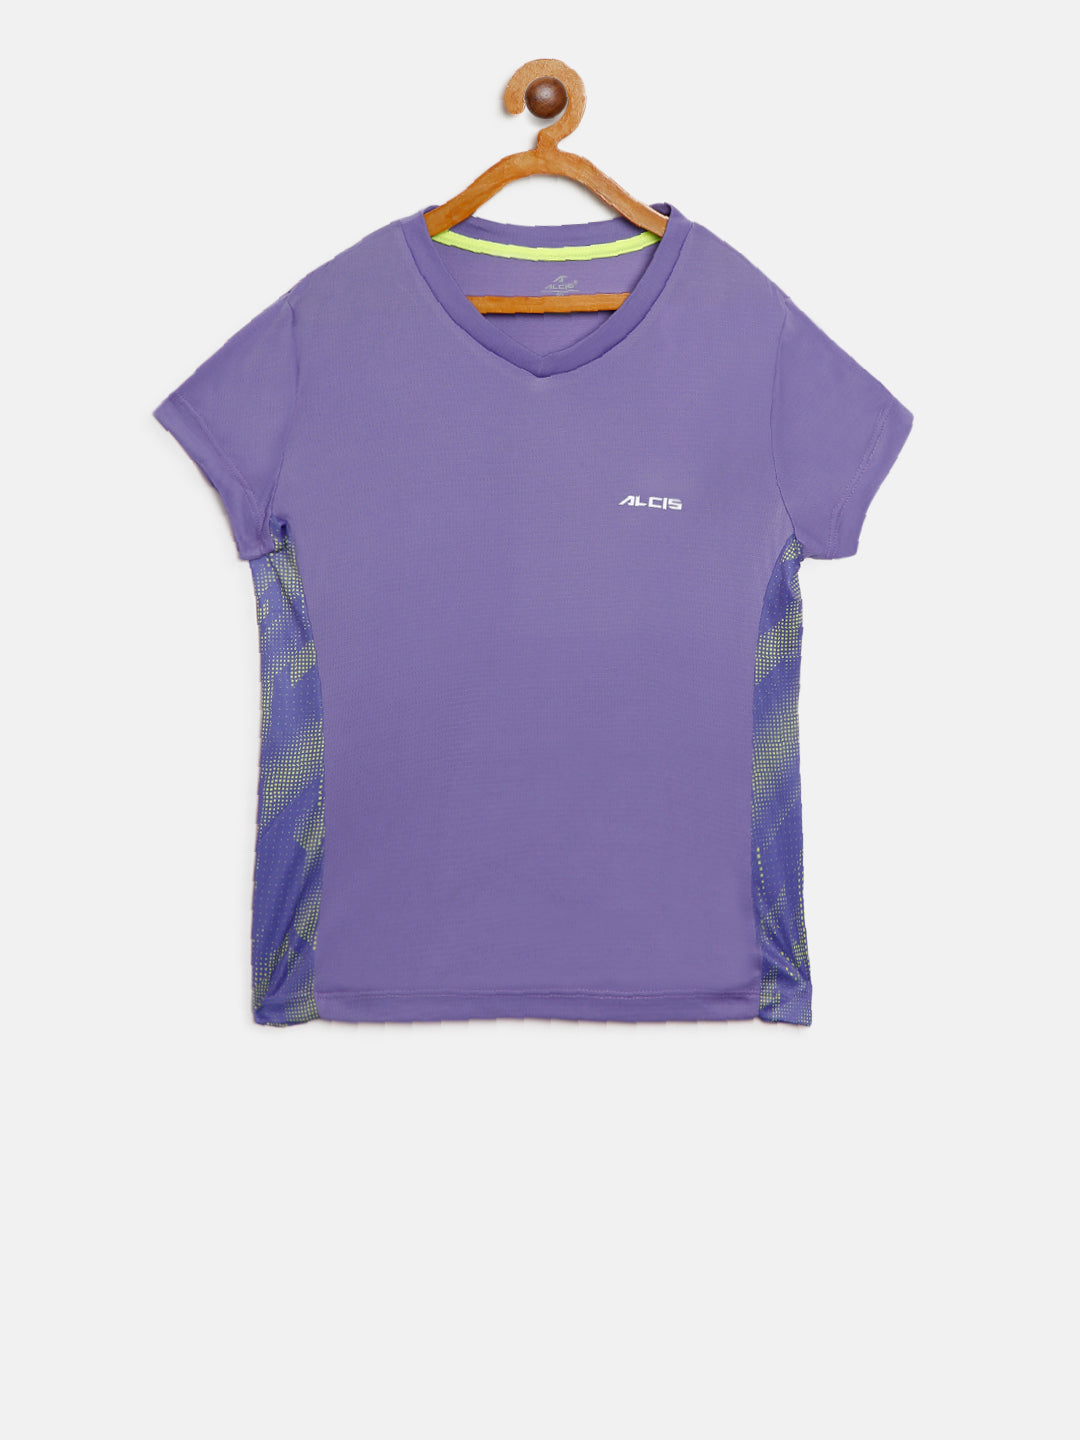 Alcis Girl's Solid Purple Tshirt